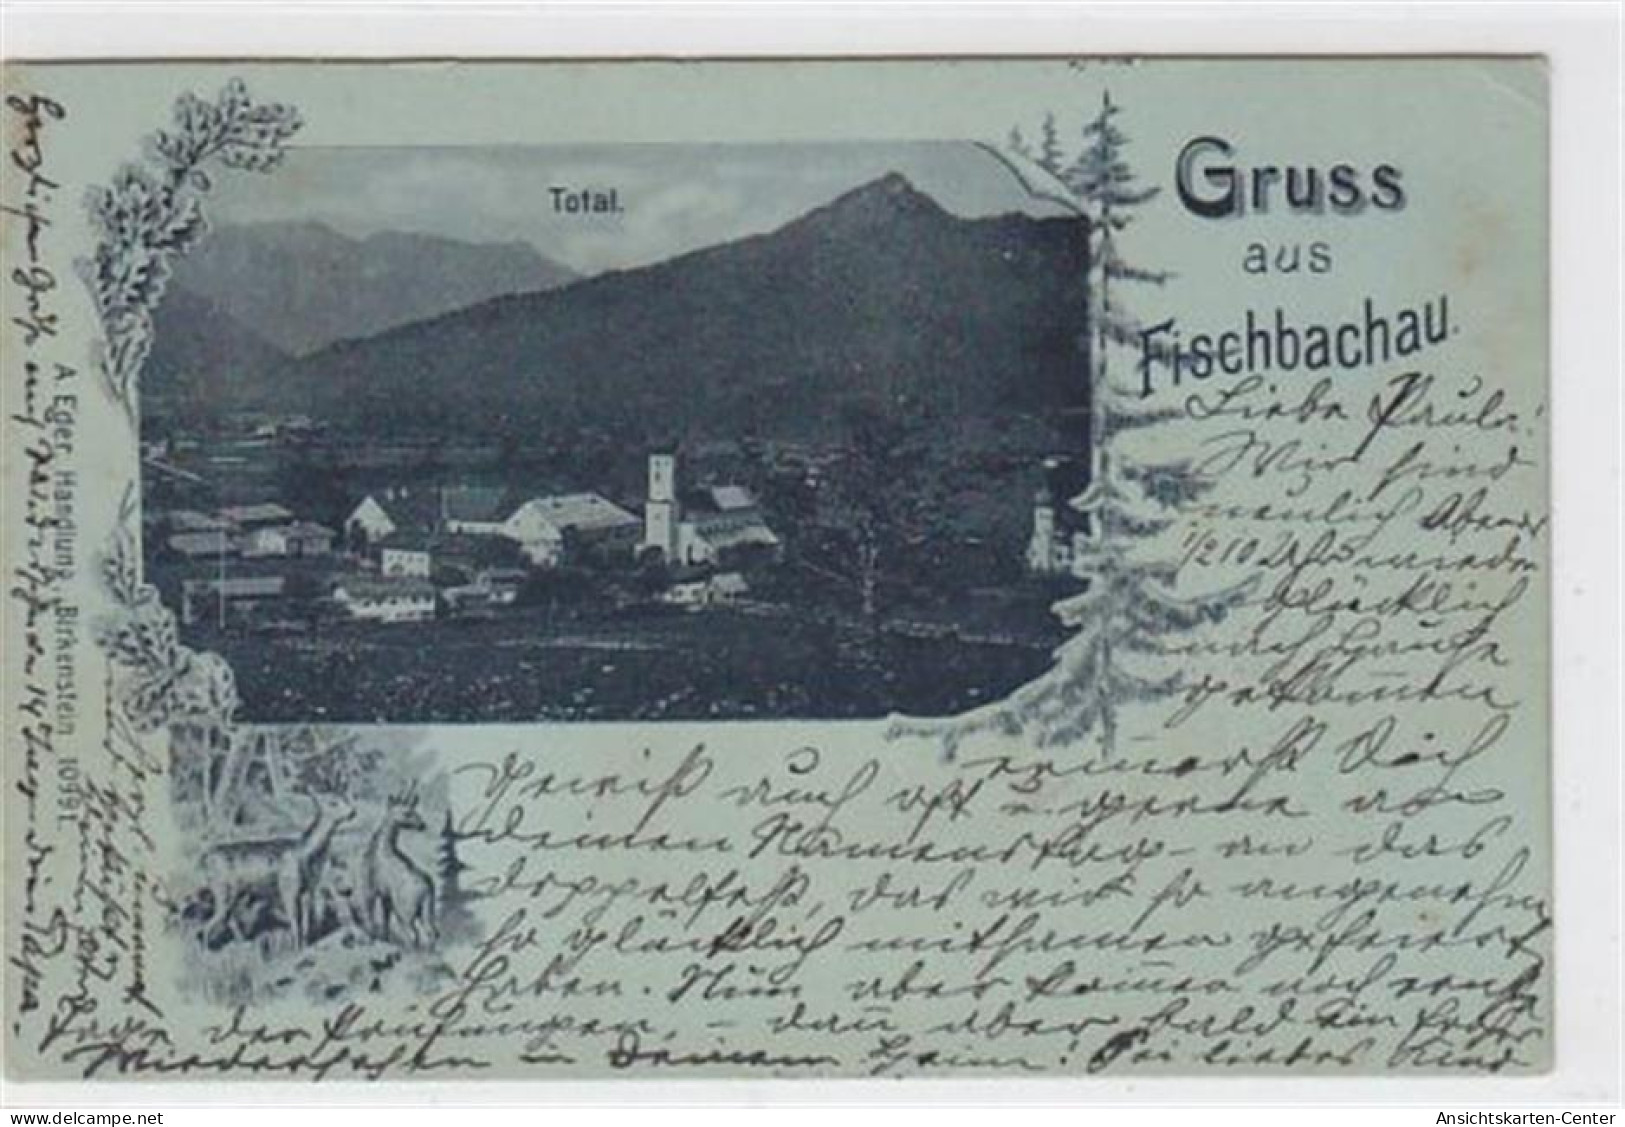 39045806 - Fischbachau. Totalansicht Zeichnung Mit 2 Rehen Gelaufen Am 01. Juli 1906 Leicht Stockfleckig, Sonst Gut Erh - Bad Wiessee